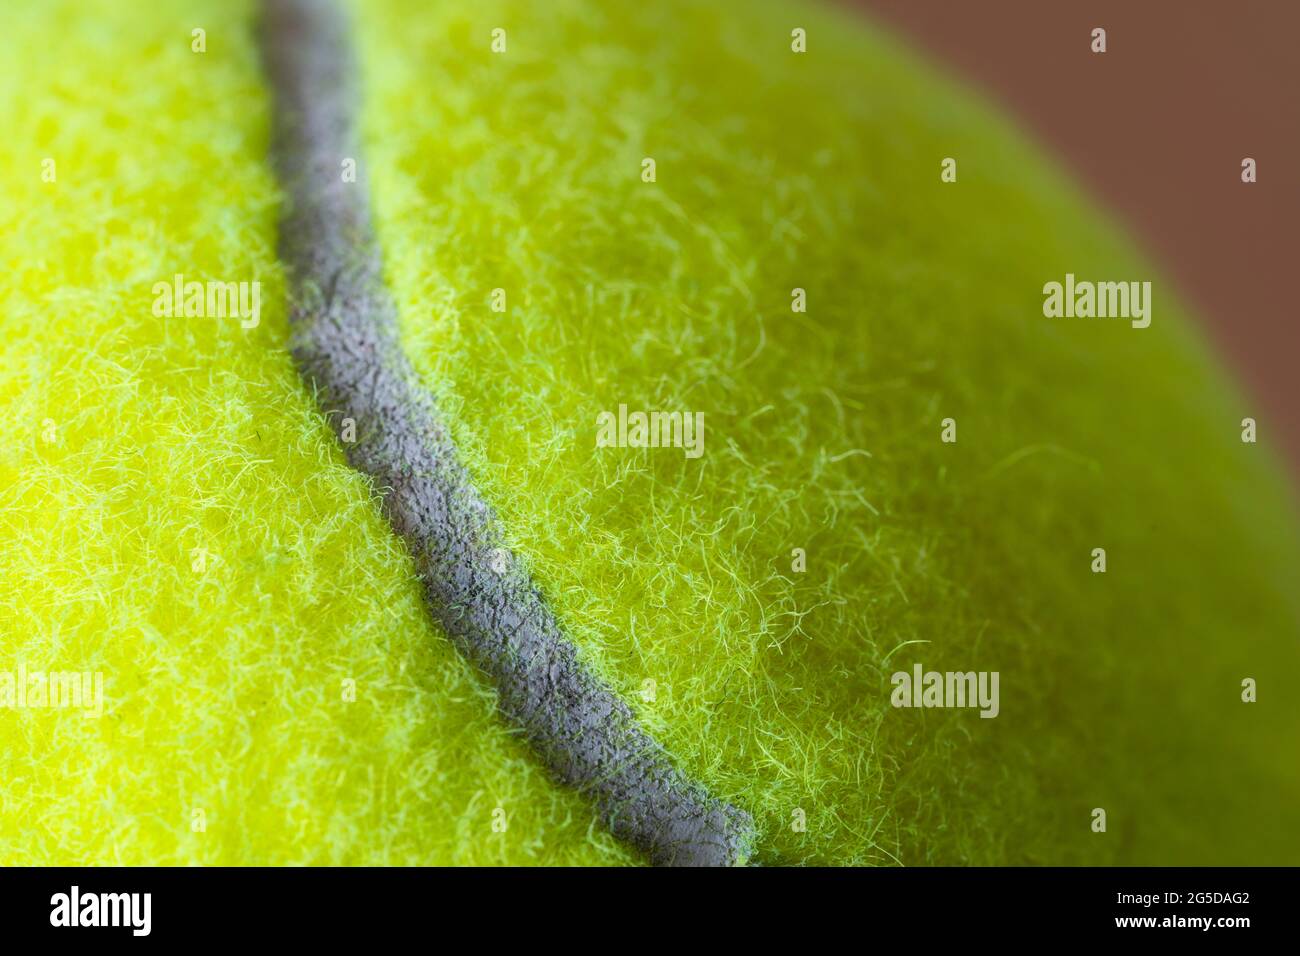 Macro closeup di una palla da tennis gialla fluorescente (giallo ottico) che mostra la copertura in feltro fibroso e l'ovale curvilineo bianco Foto Stock